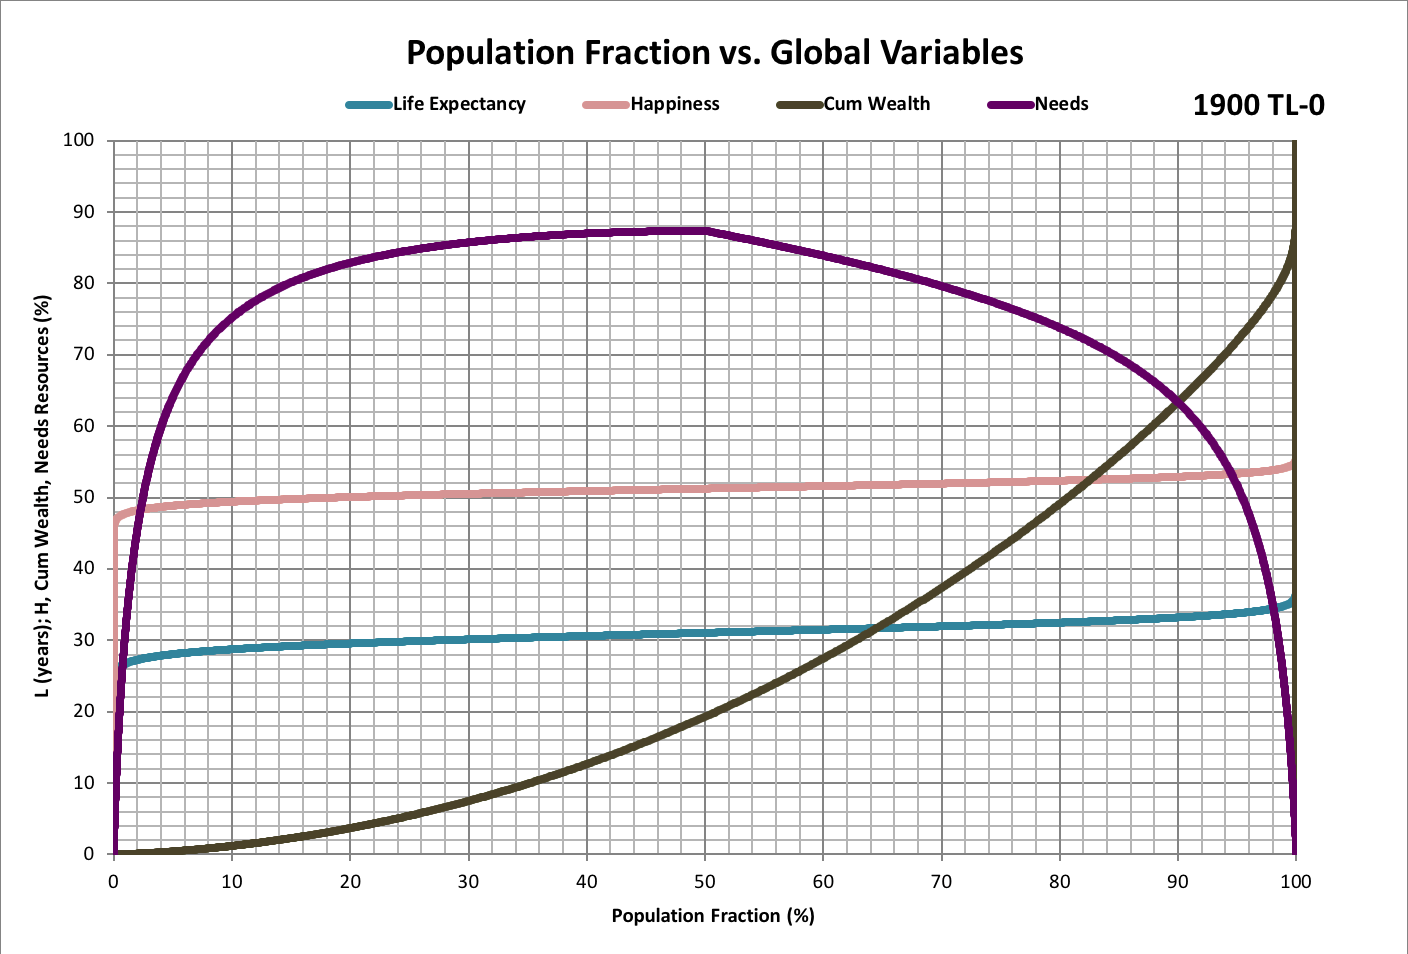 Pop Fraction vs. All: 1900-2020